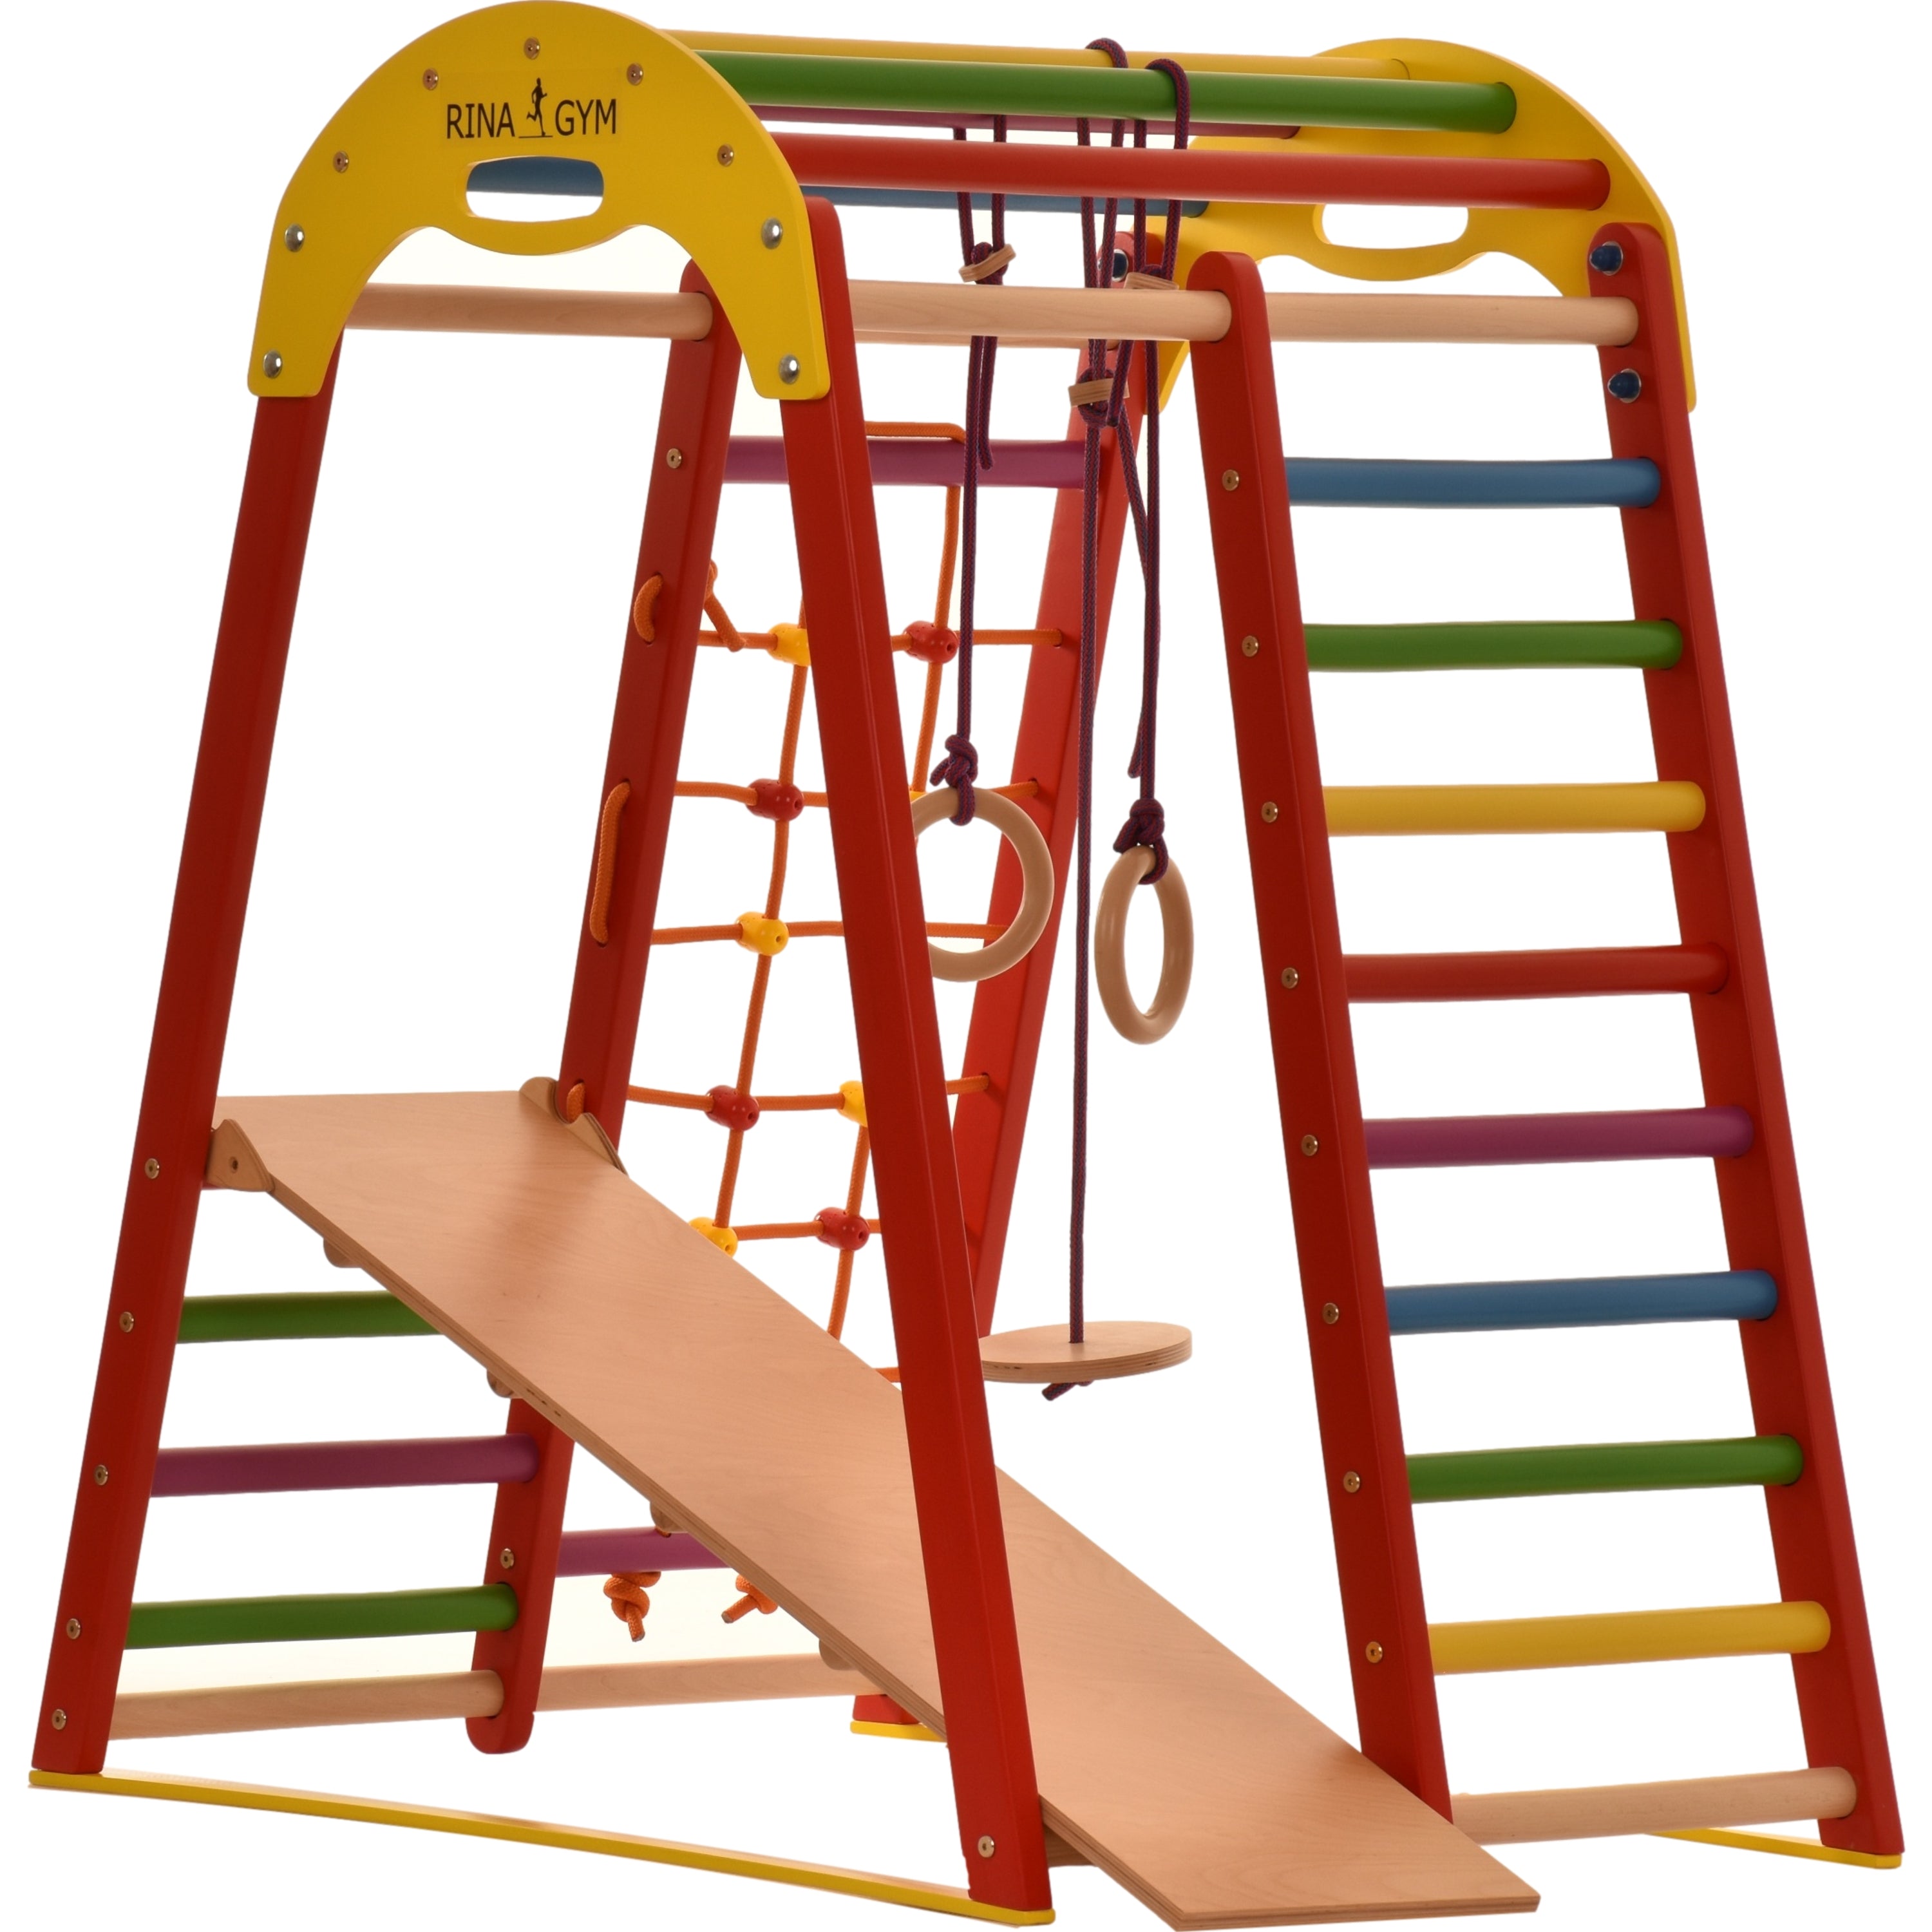 Trójkąt wspinaczkowy RINAGYM-drewniany plac zabaw